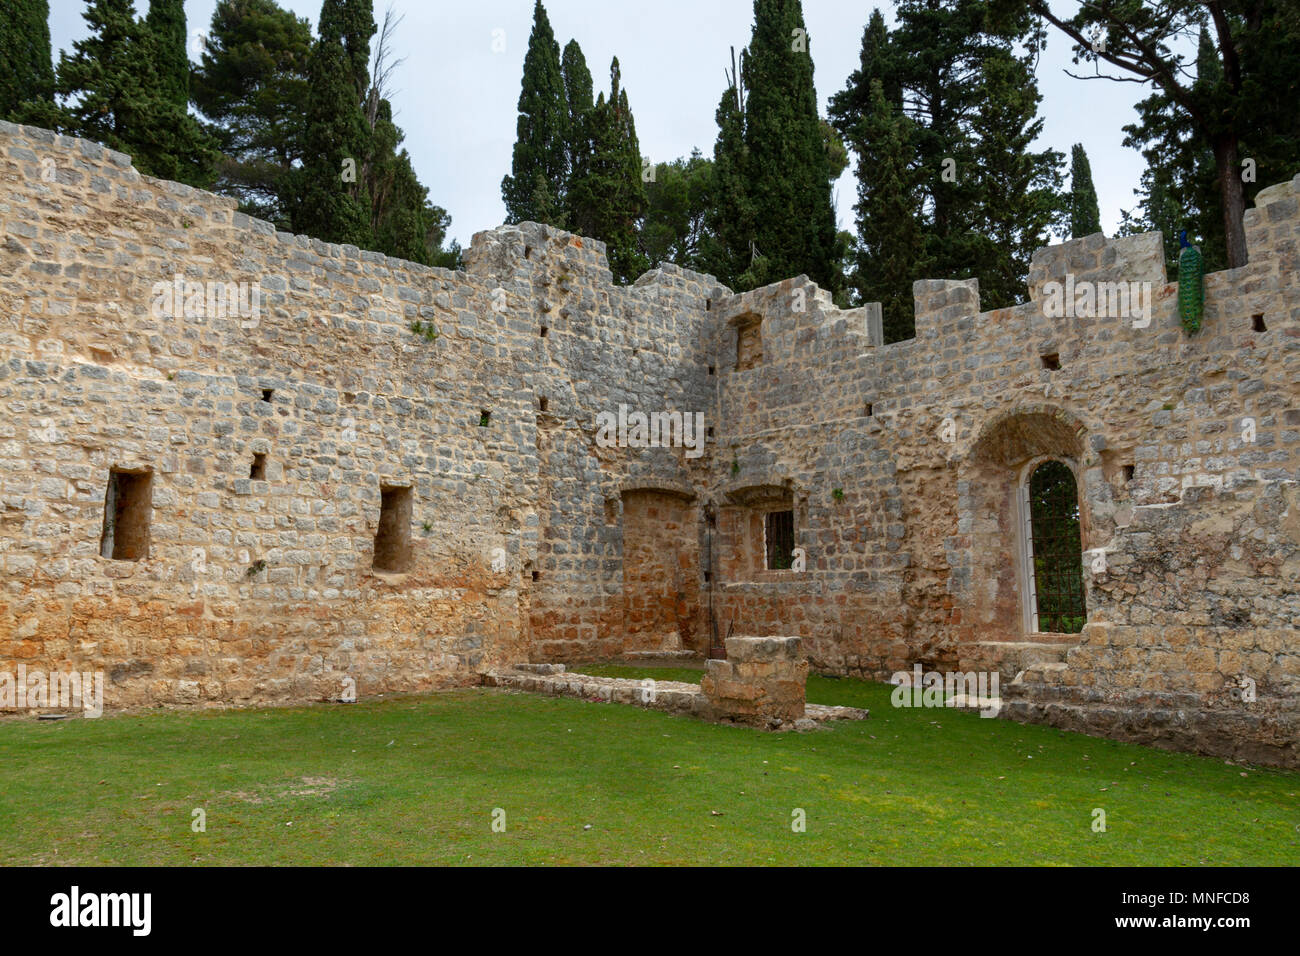 La torre, parte del distrutto chiostri all'interno dell'ex monastero benedettino sull isola di Lokrum, nel Mare Adriatico off Dubrovnik, Croazia. Foto Stock